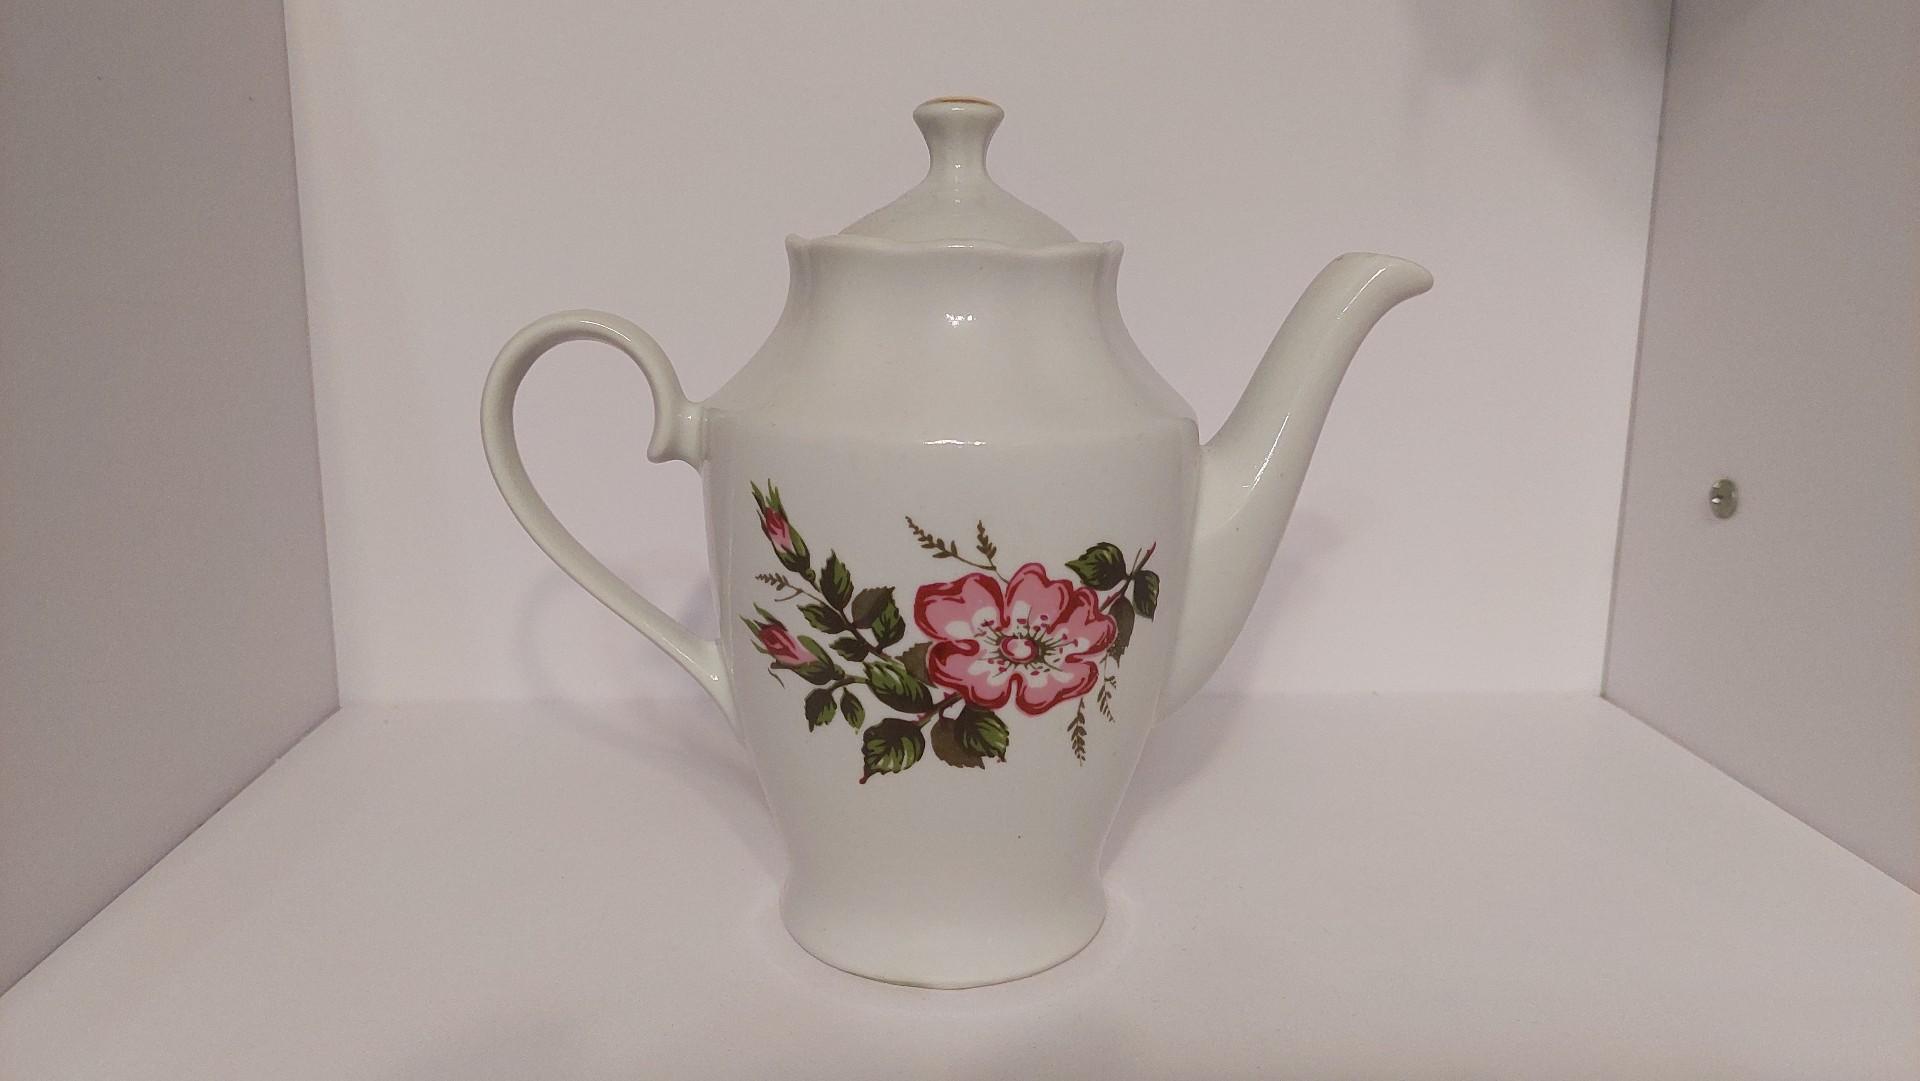 Rigos porceliano arbatinukas su gėlių motyvais~1l